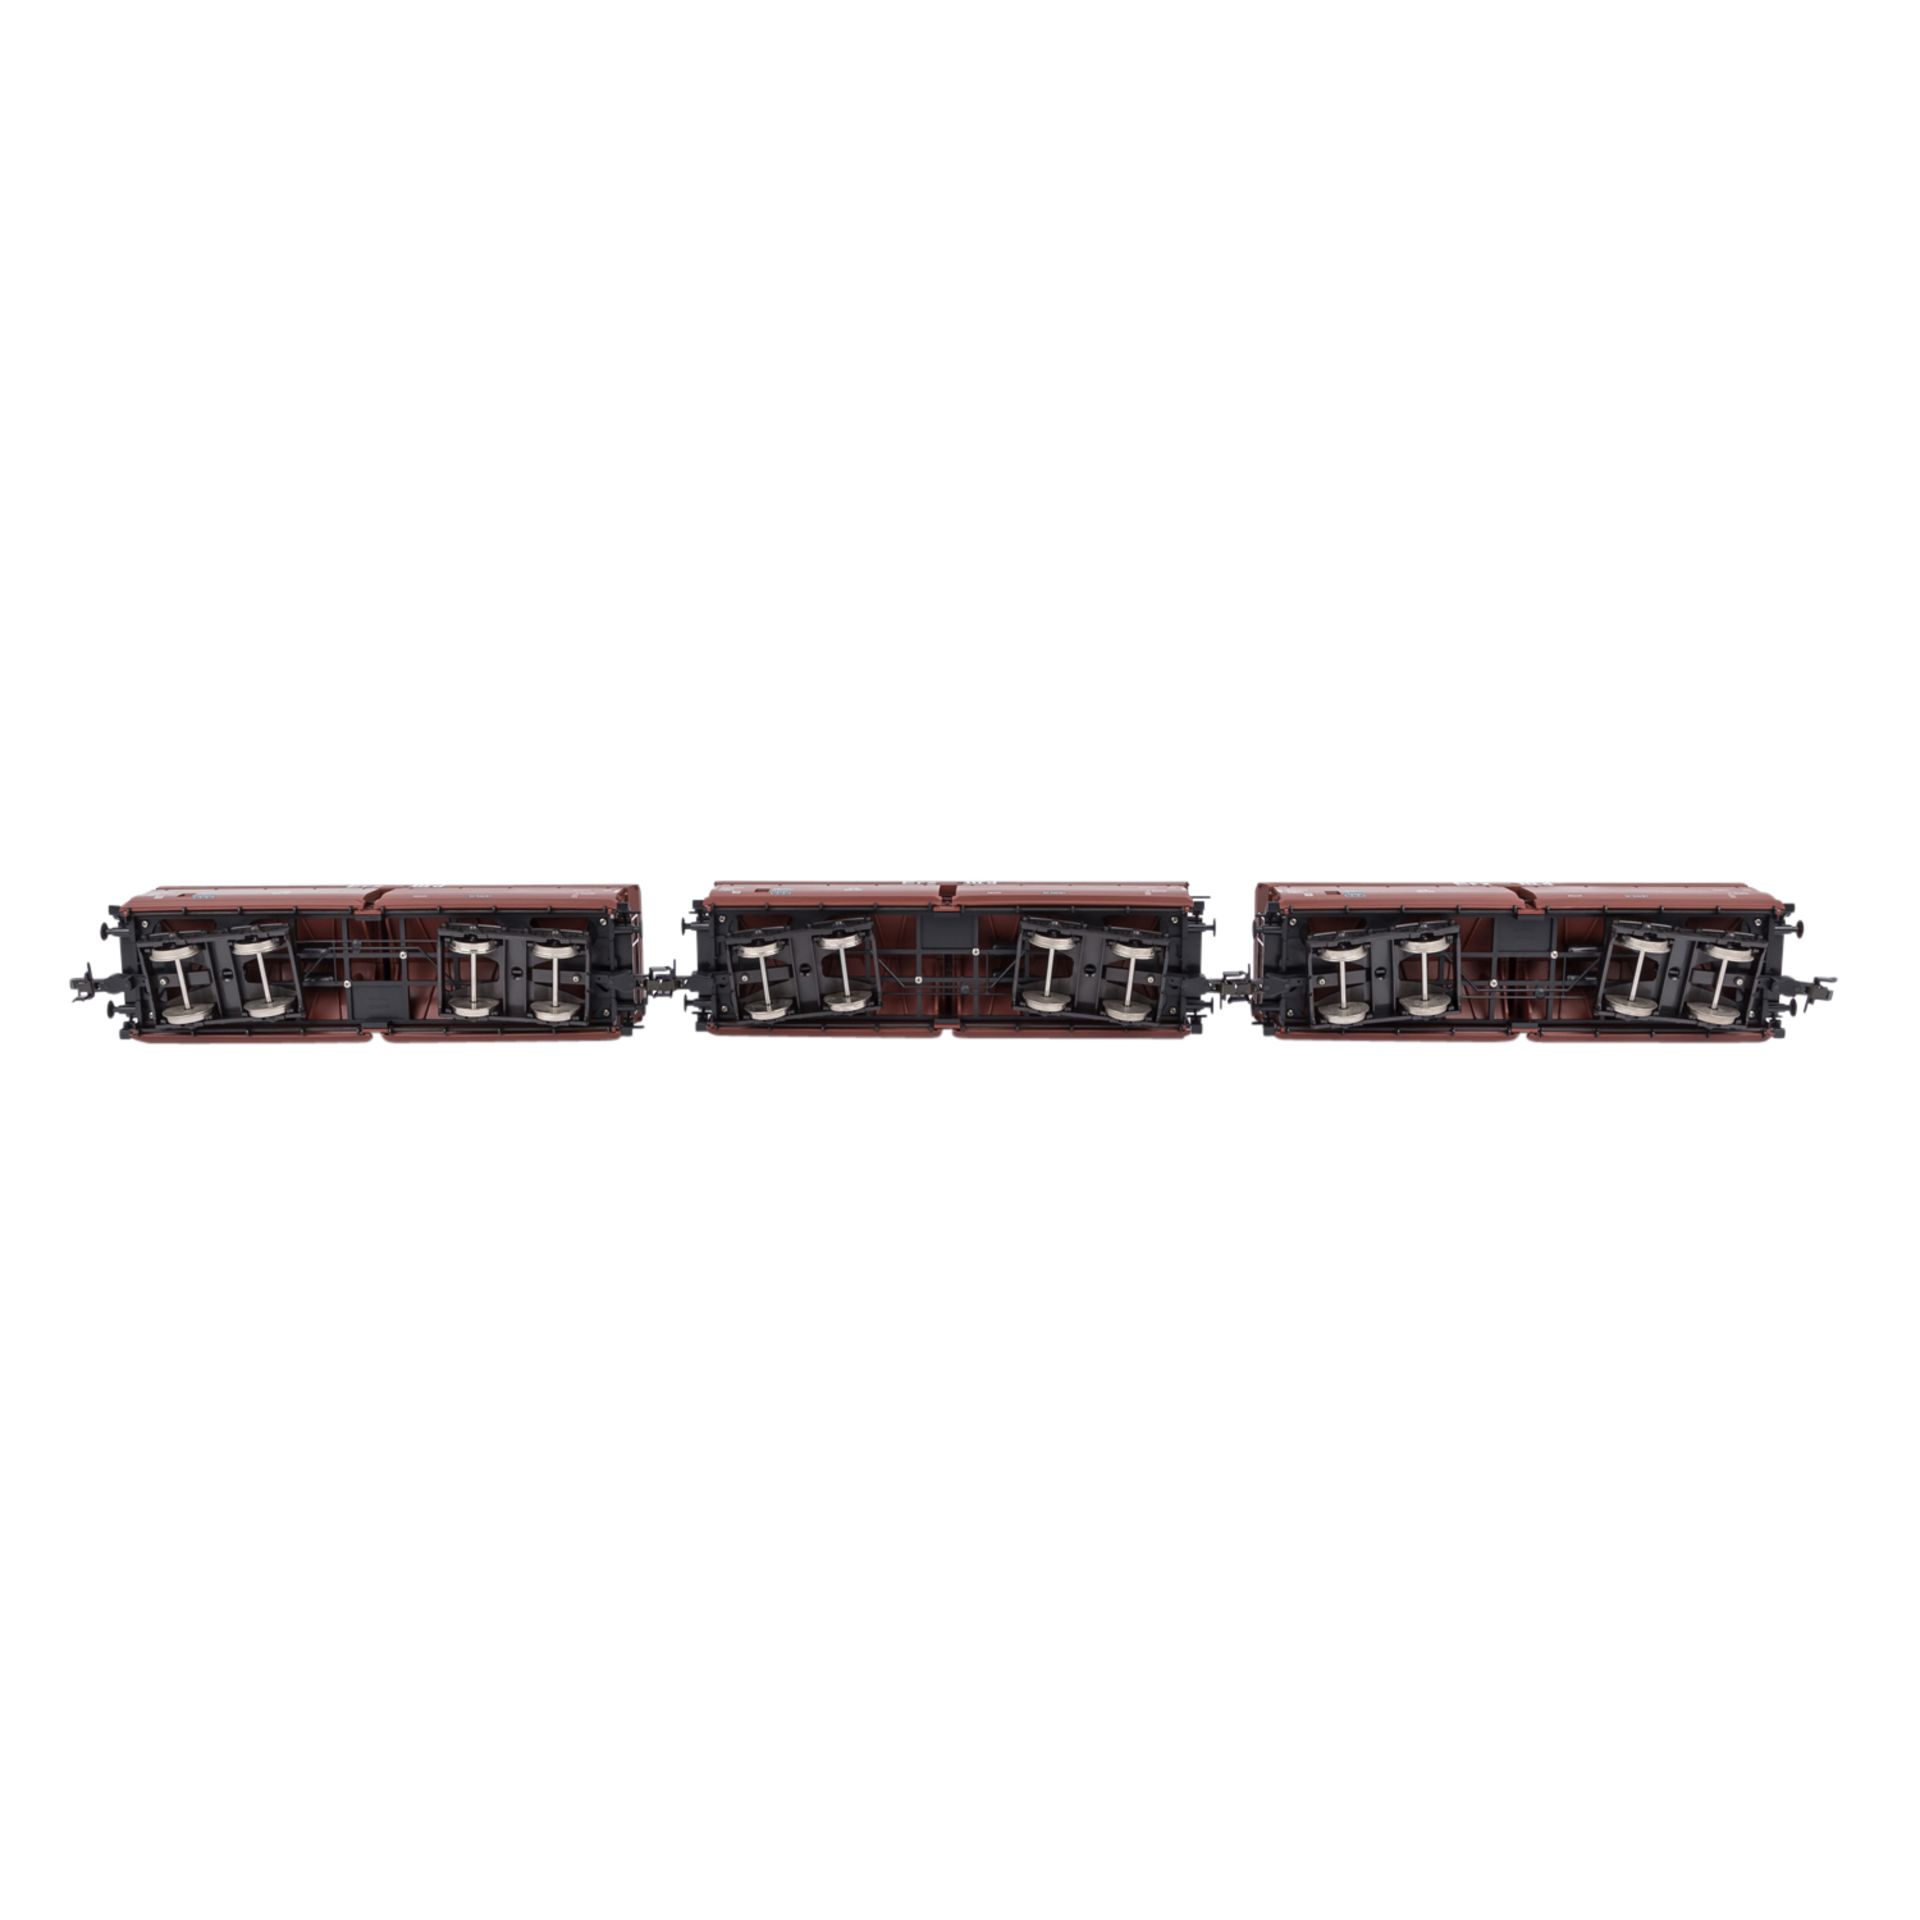 MÄRKLIN Wagen-Set "Erztransport" 58353, Spur 1.Bestehend aus 3 rötlich-braunen Selbstentladewagen - Image 3 of 4